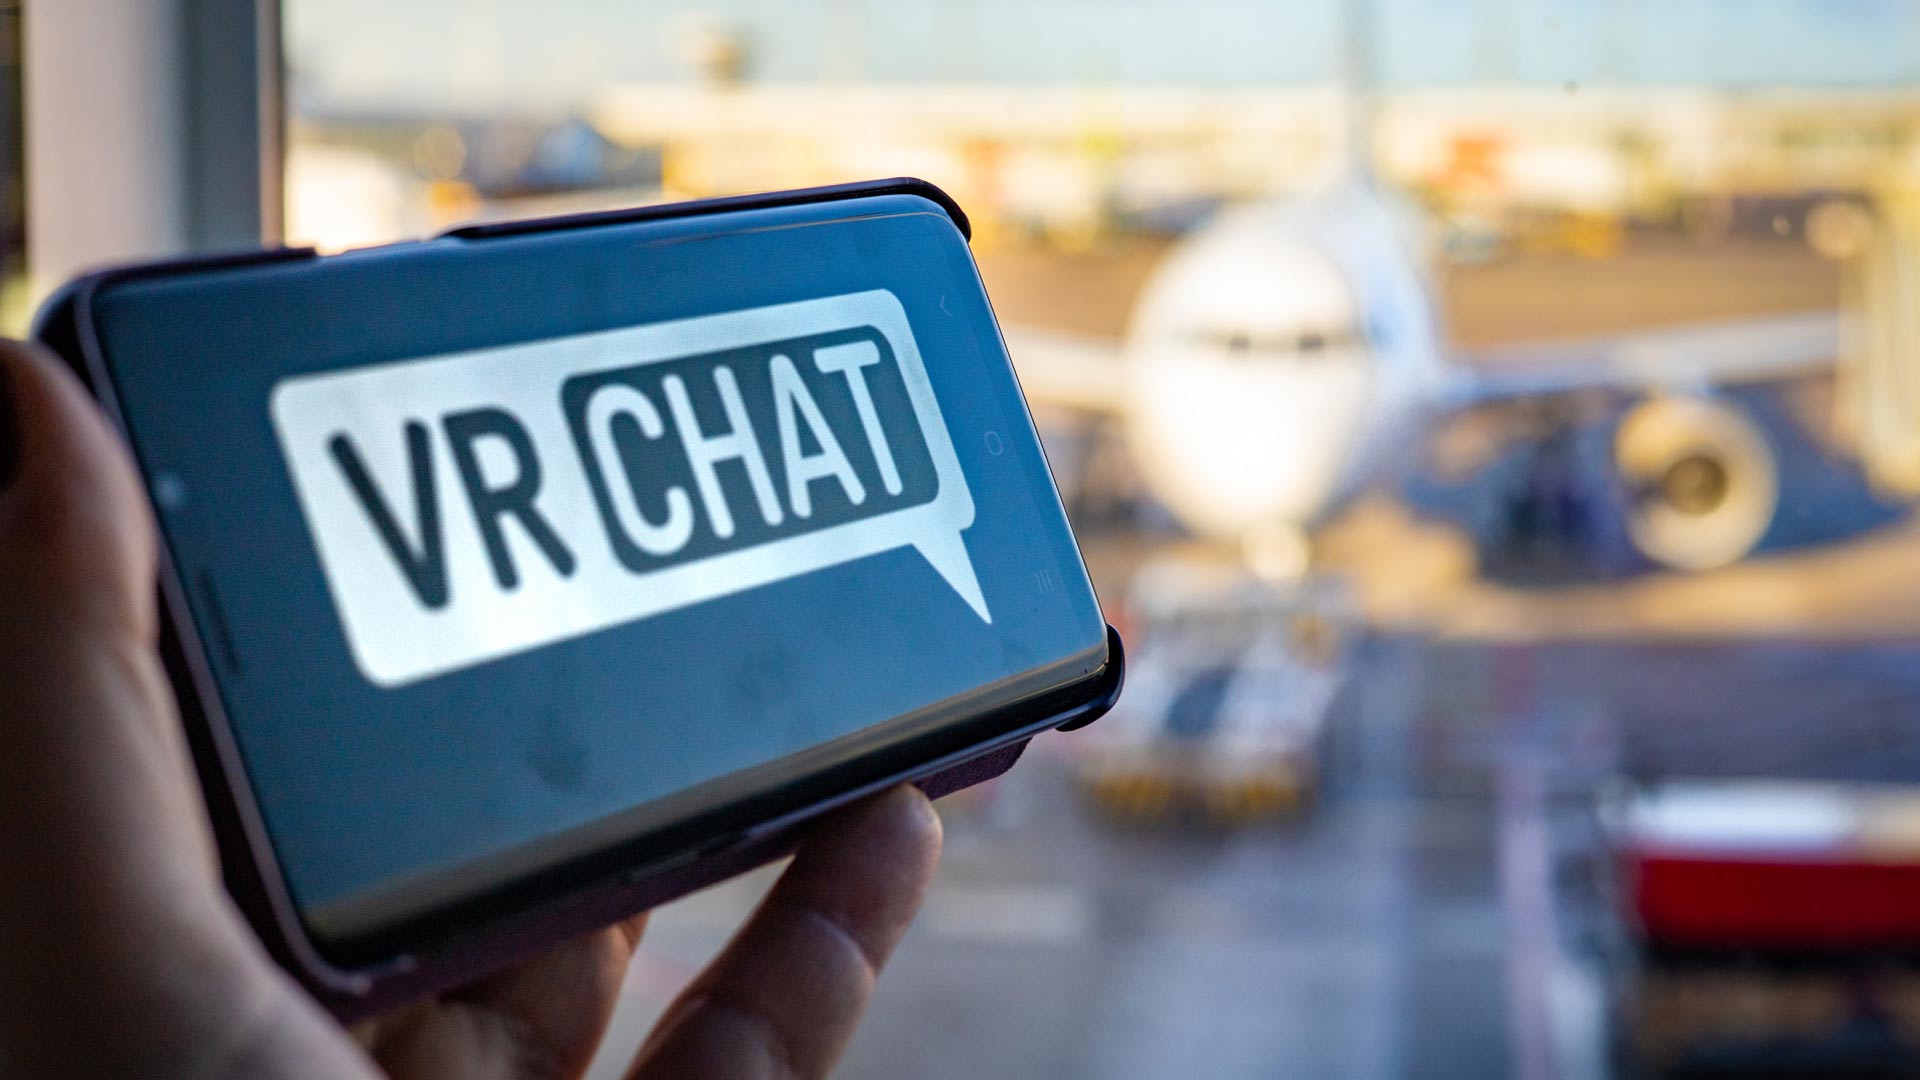 'VRChat' nu in ontwikkeling voor Android- en iOS-apparaten